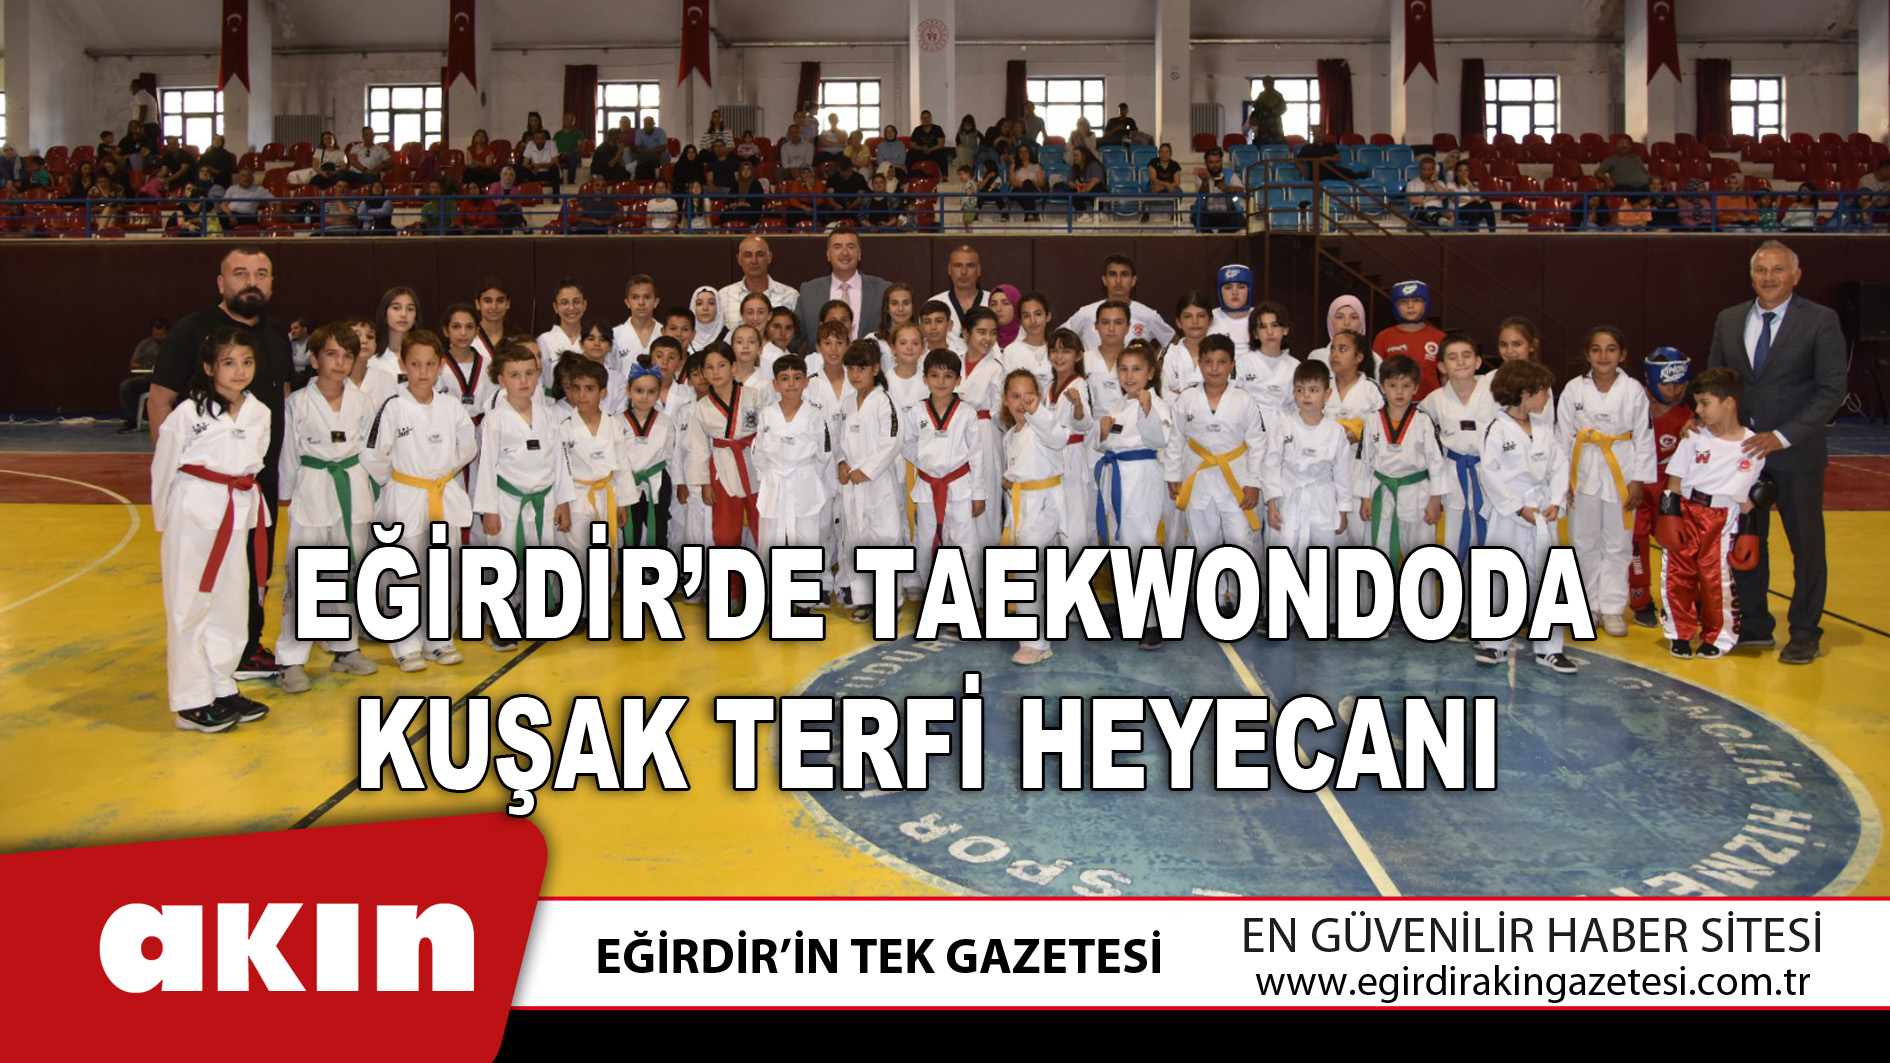 Eğirdir’de Taekwondoda Kuşak Terfi Heyecanı 